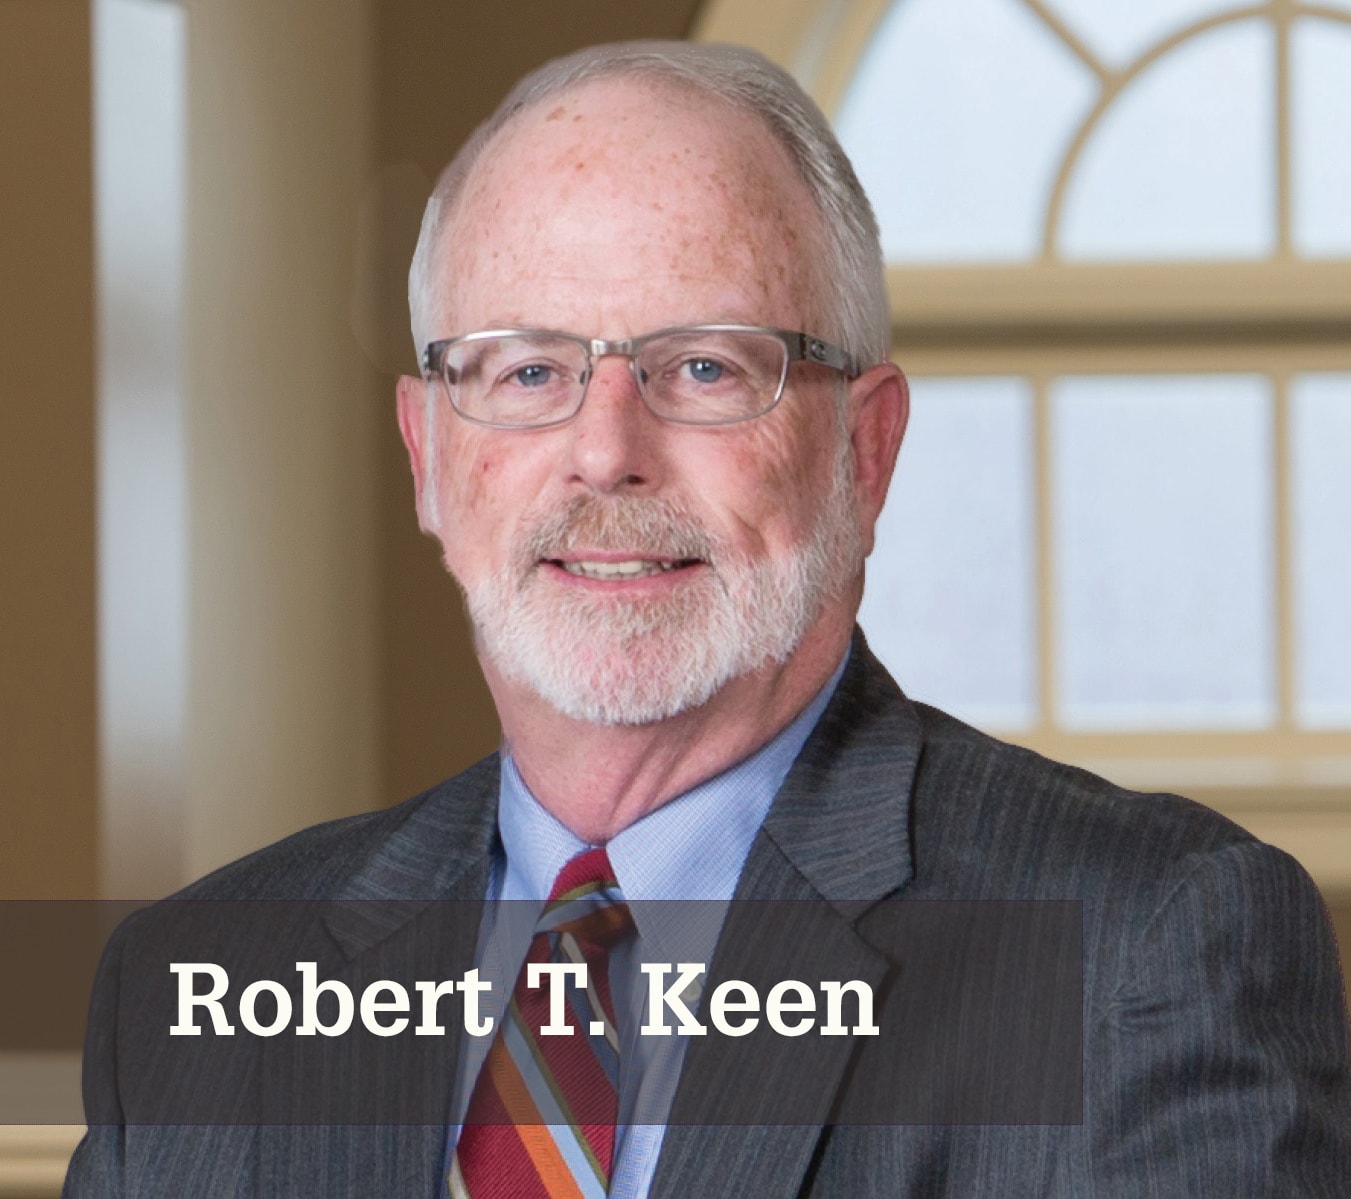 Robert T. Keen